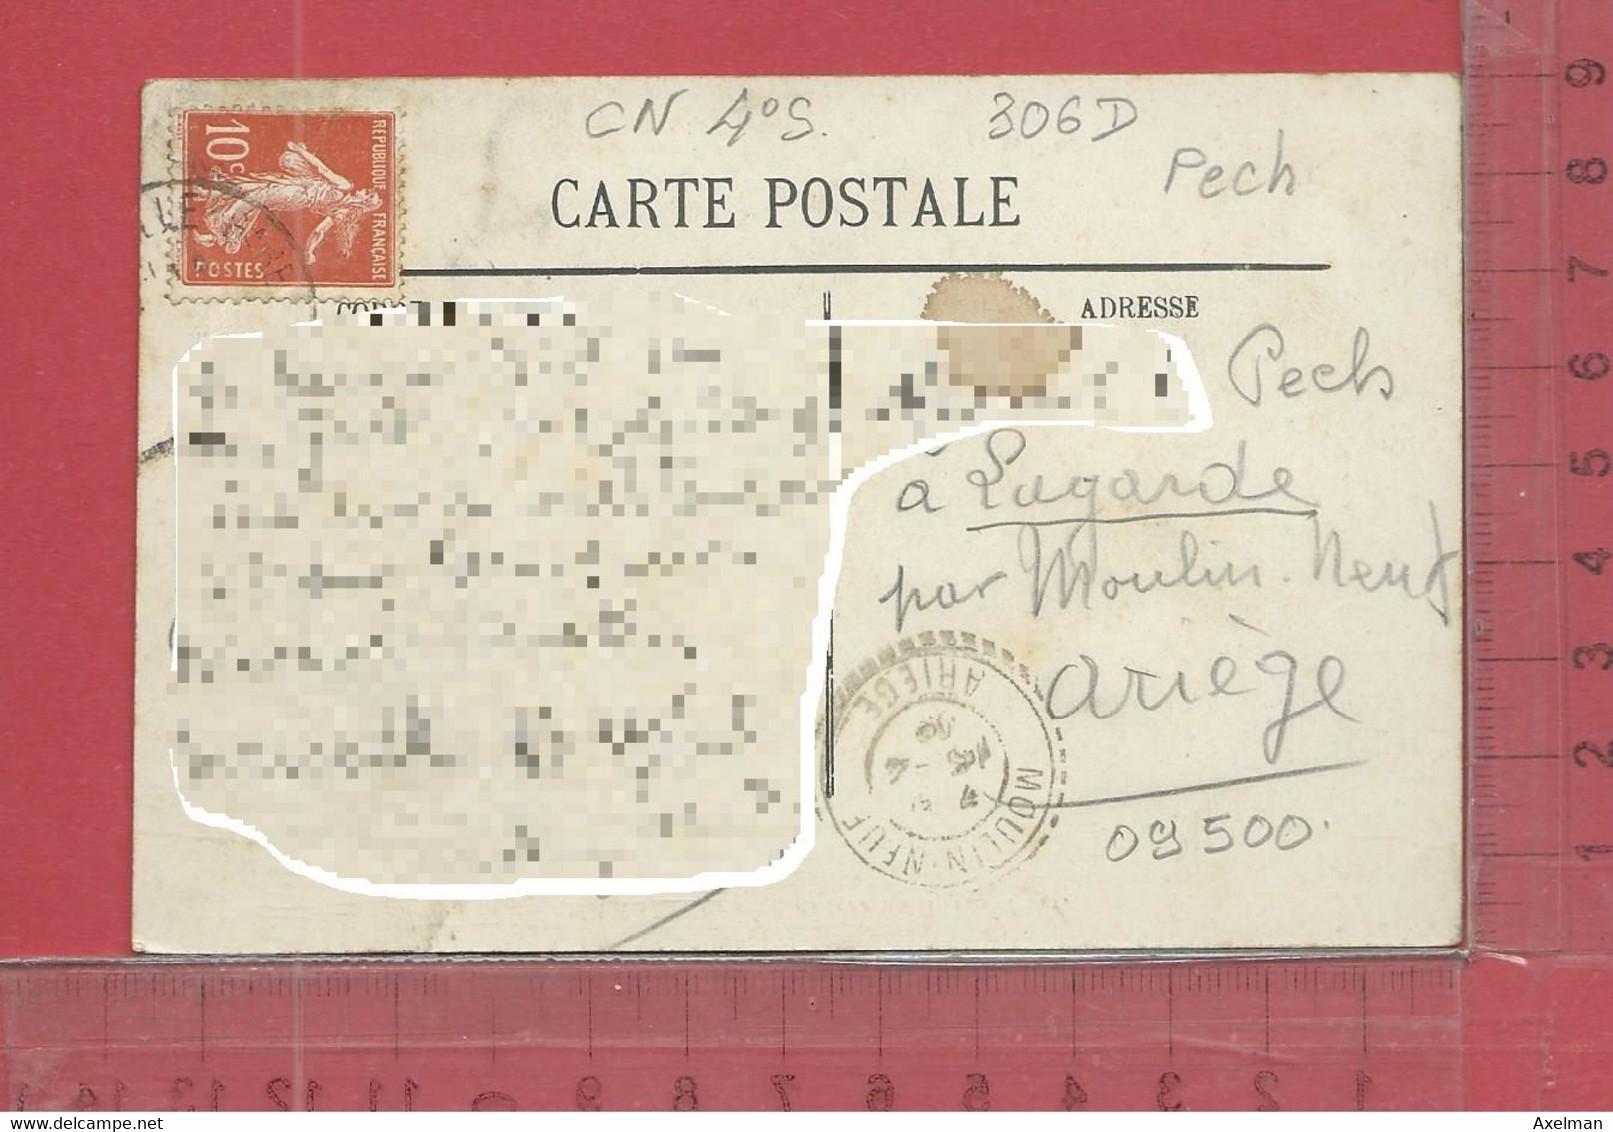 CARTE NOMINATIVE : PECH  à  09500  Lagarde - Genealogy